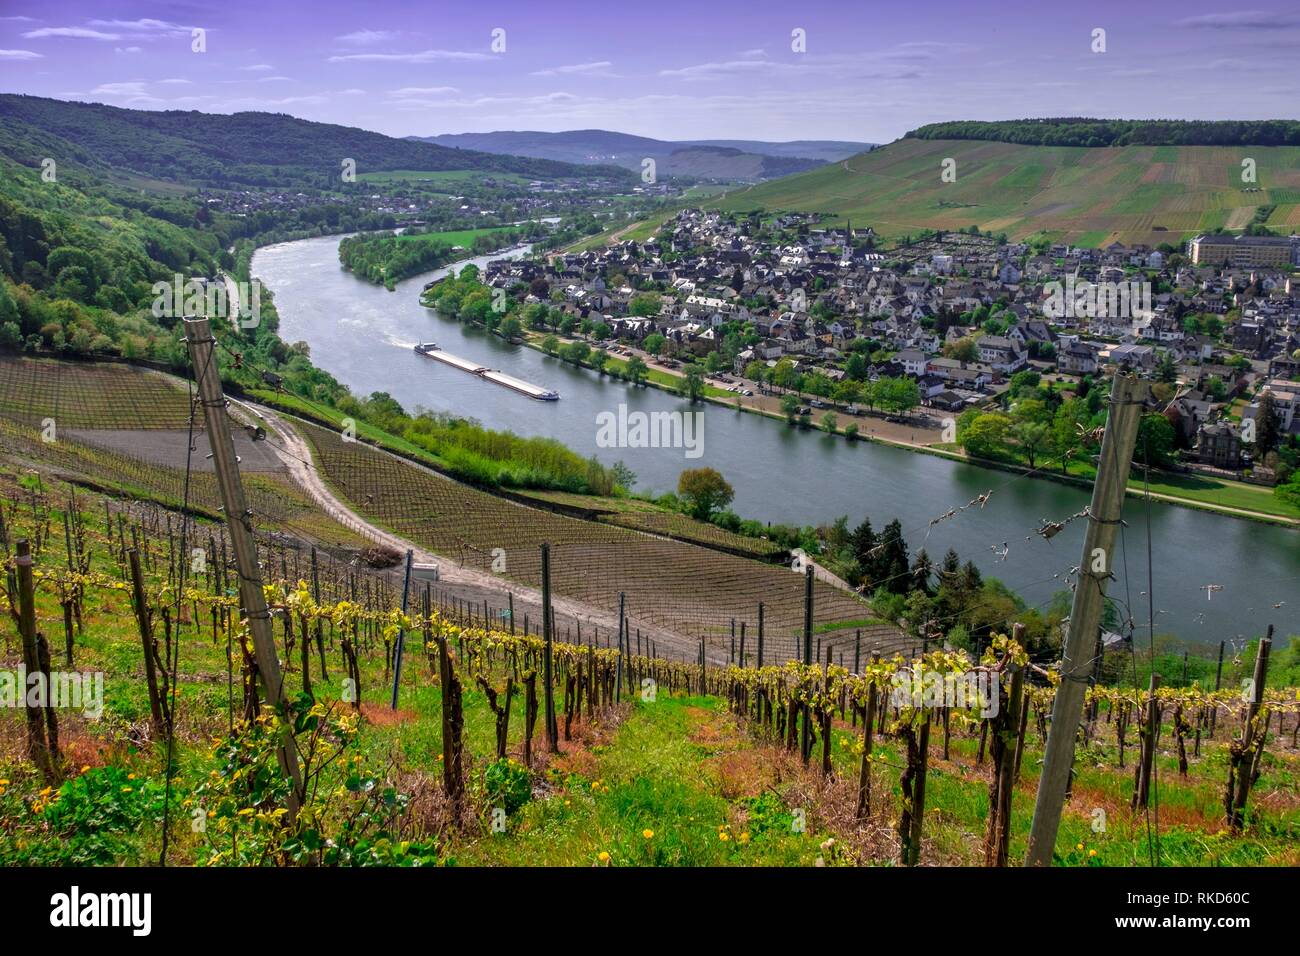 Germania, della Mosella, Bernkastel Kues. La Mosella è un fiume che scorre attraverso la Francia, il Lussemburgo e la Germania. È un affluente di sinistra del Reno, che Foto Stock